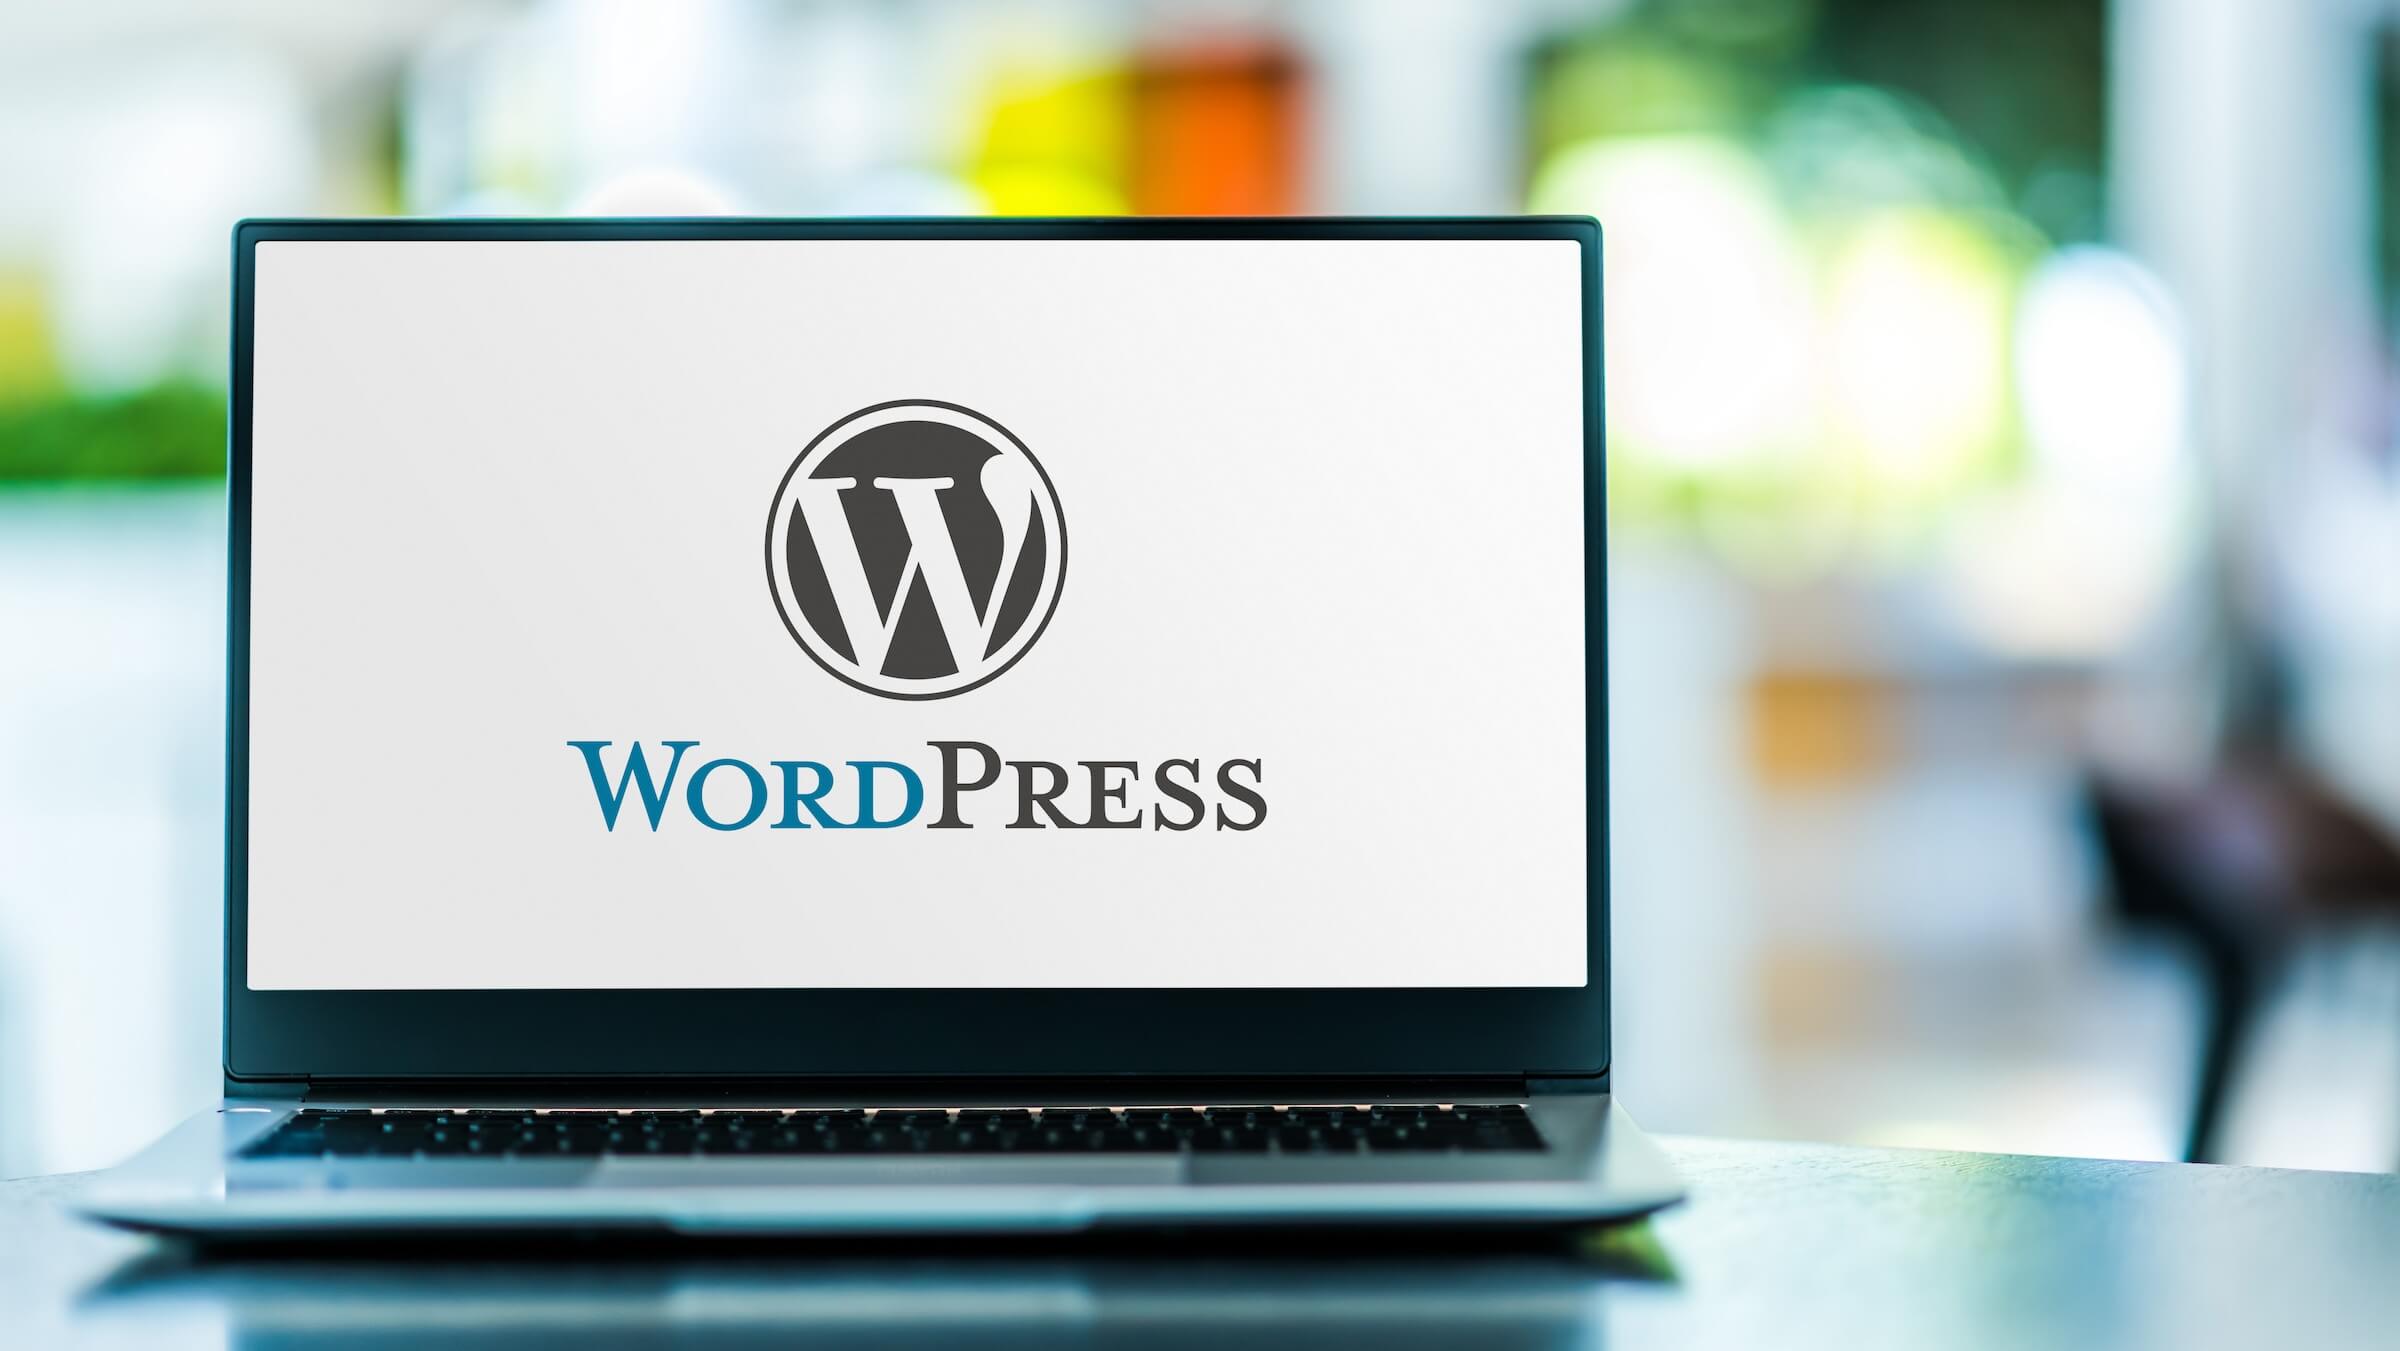 laptop z wyświetlonym logo WordPress na ekranie